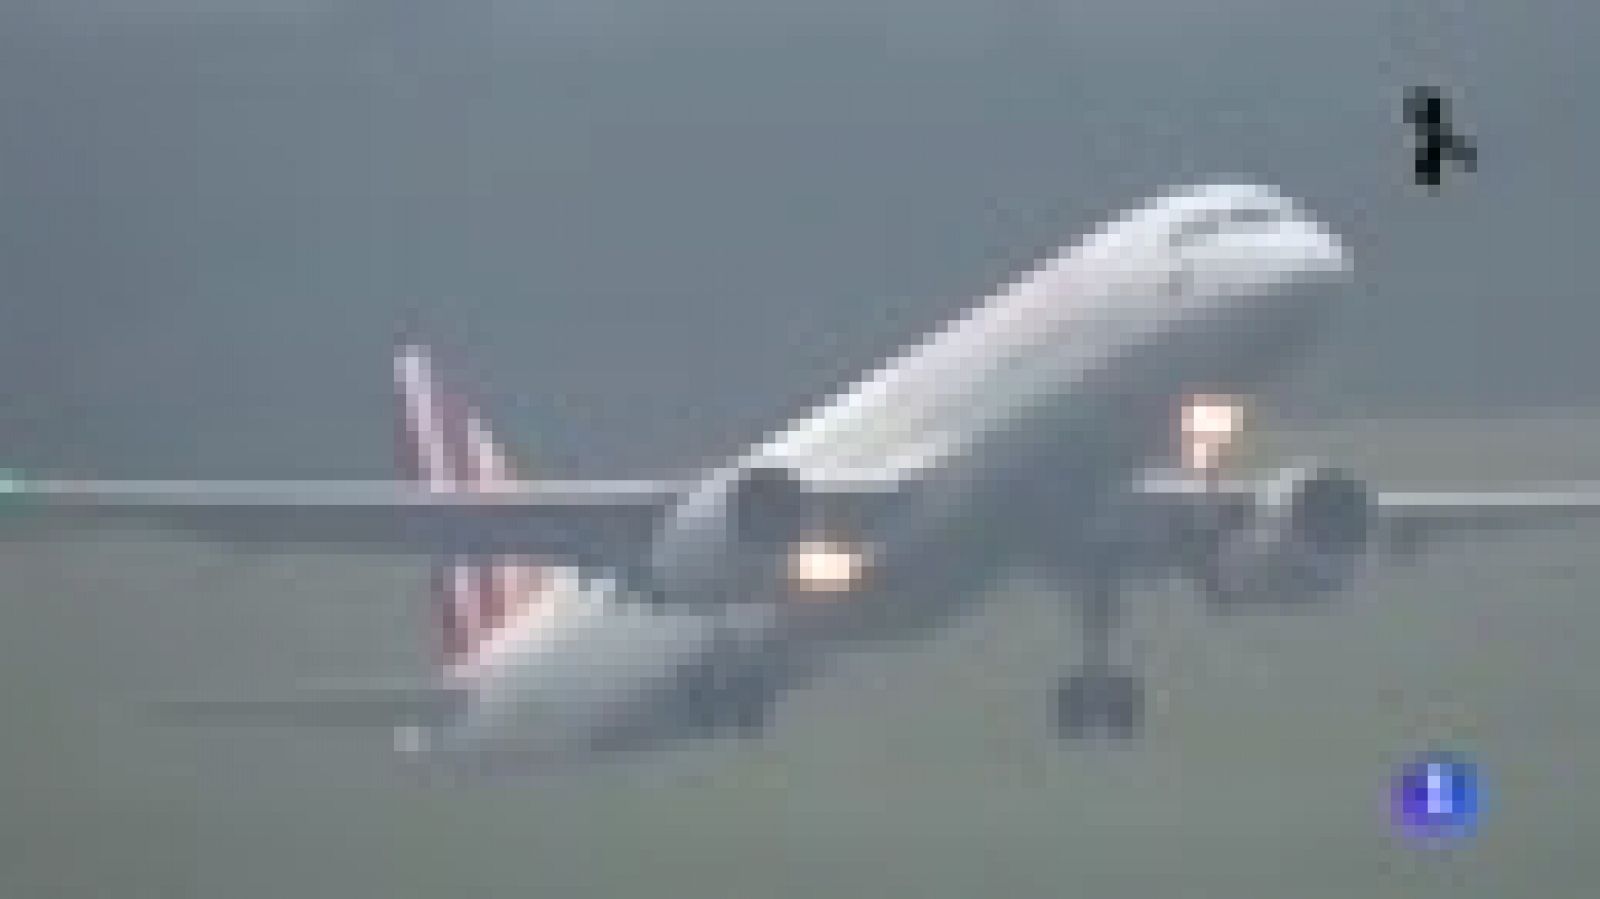 Los investigadores creen que el copiloto tenía "voluntad de destruir el avión" de Germanwings